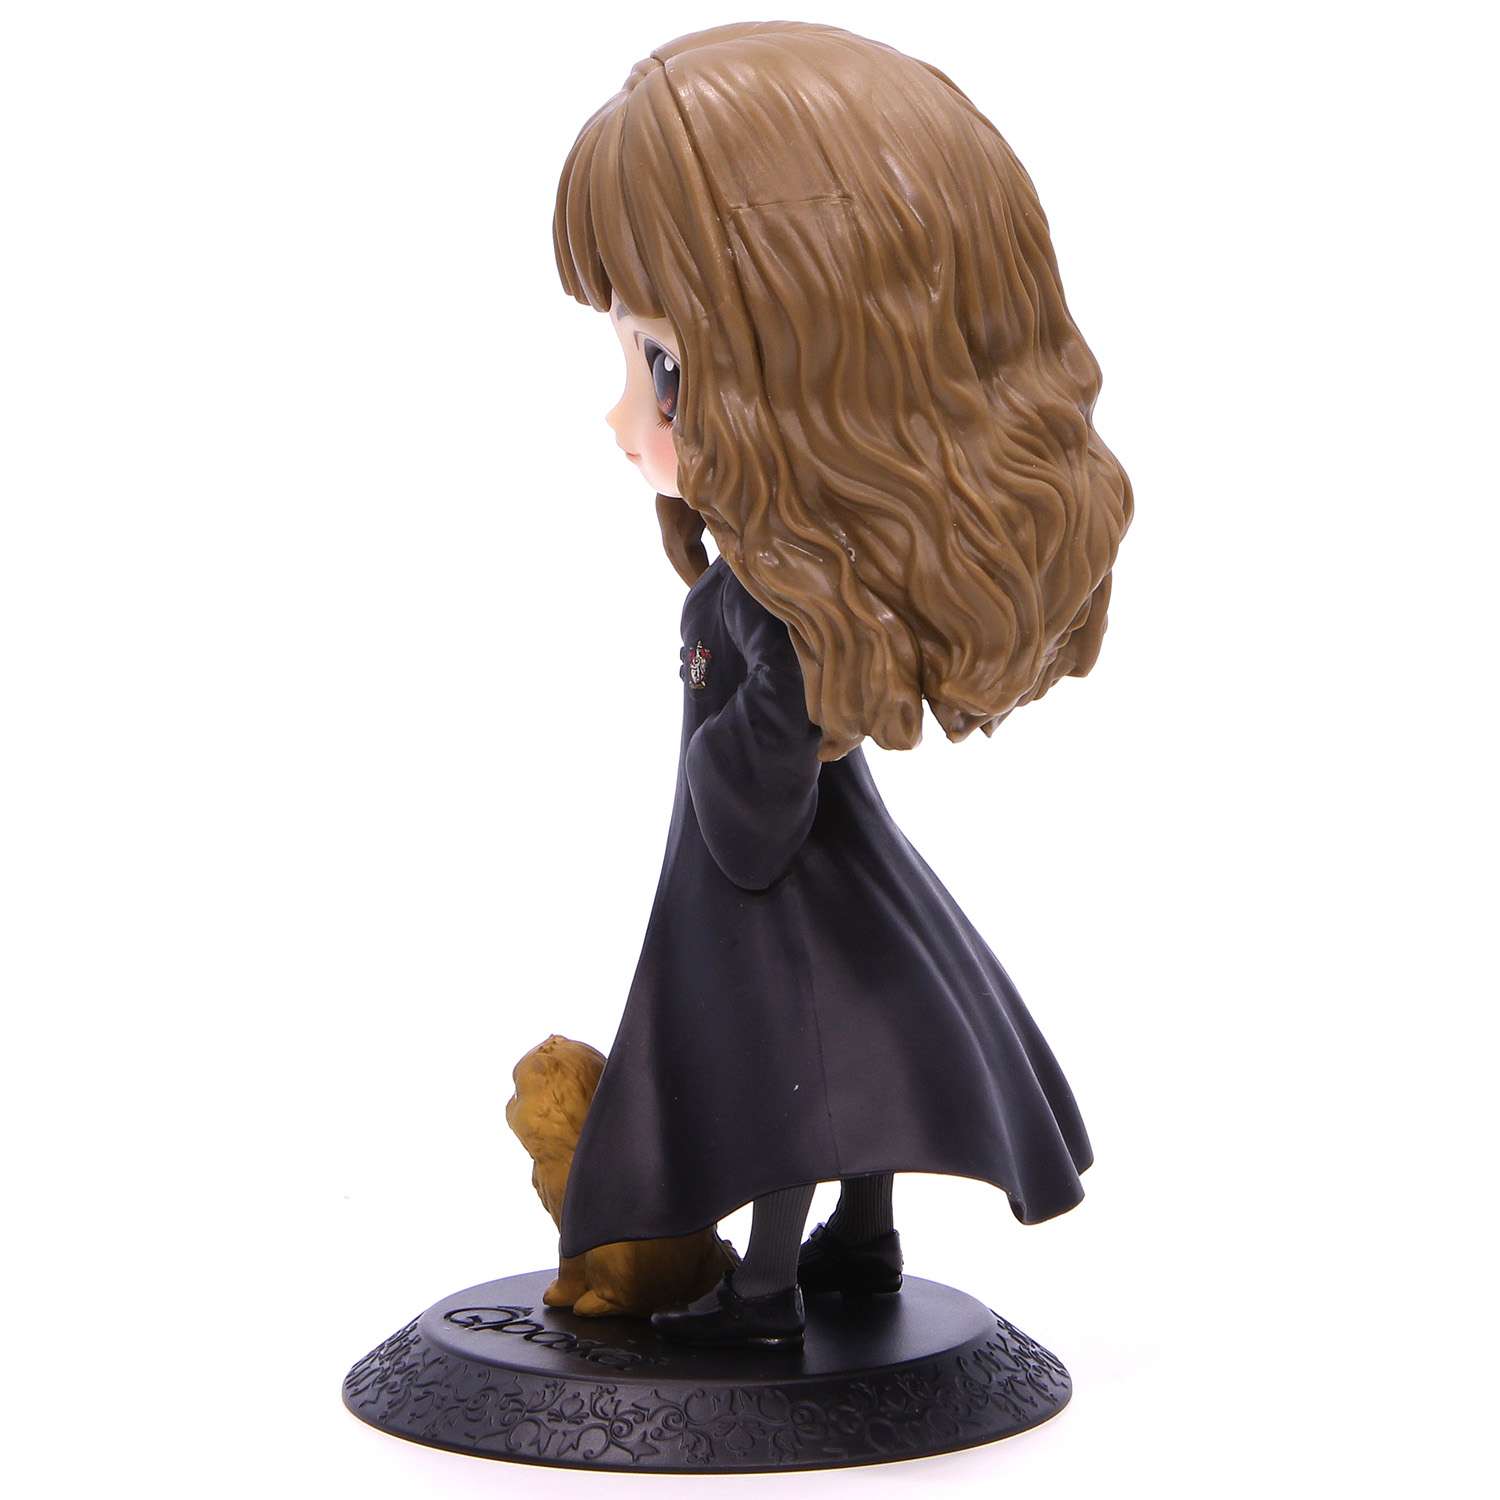 Игрушка Banpresto Harry Potter Hermione Granger With Crookshanks BDQ155 - фото 2